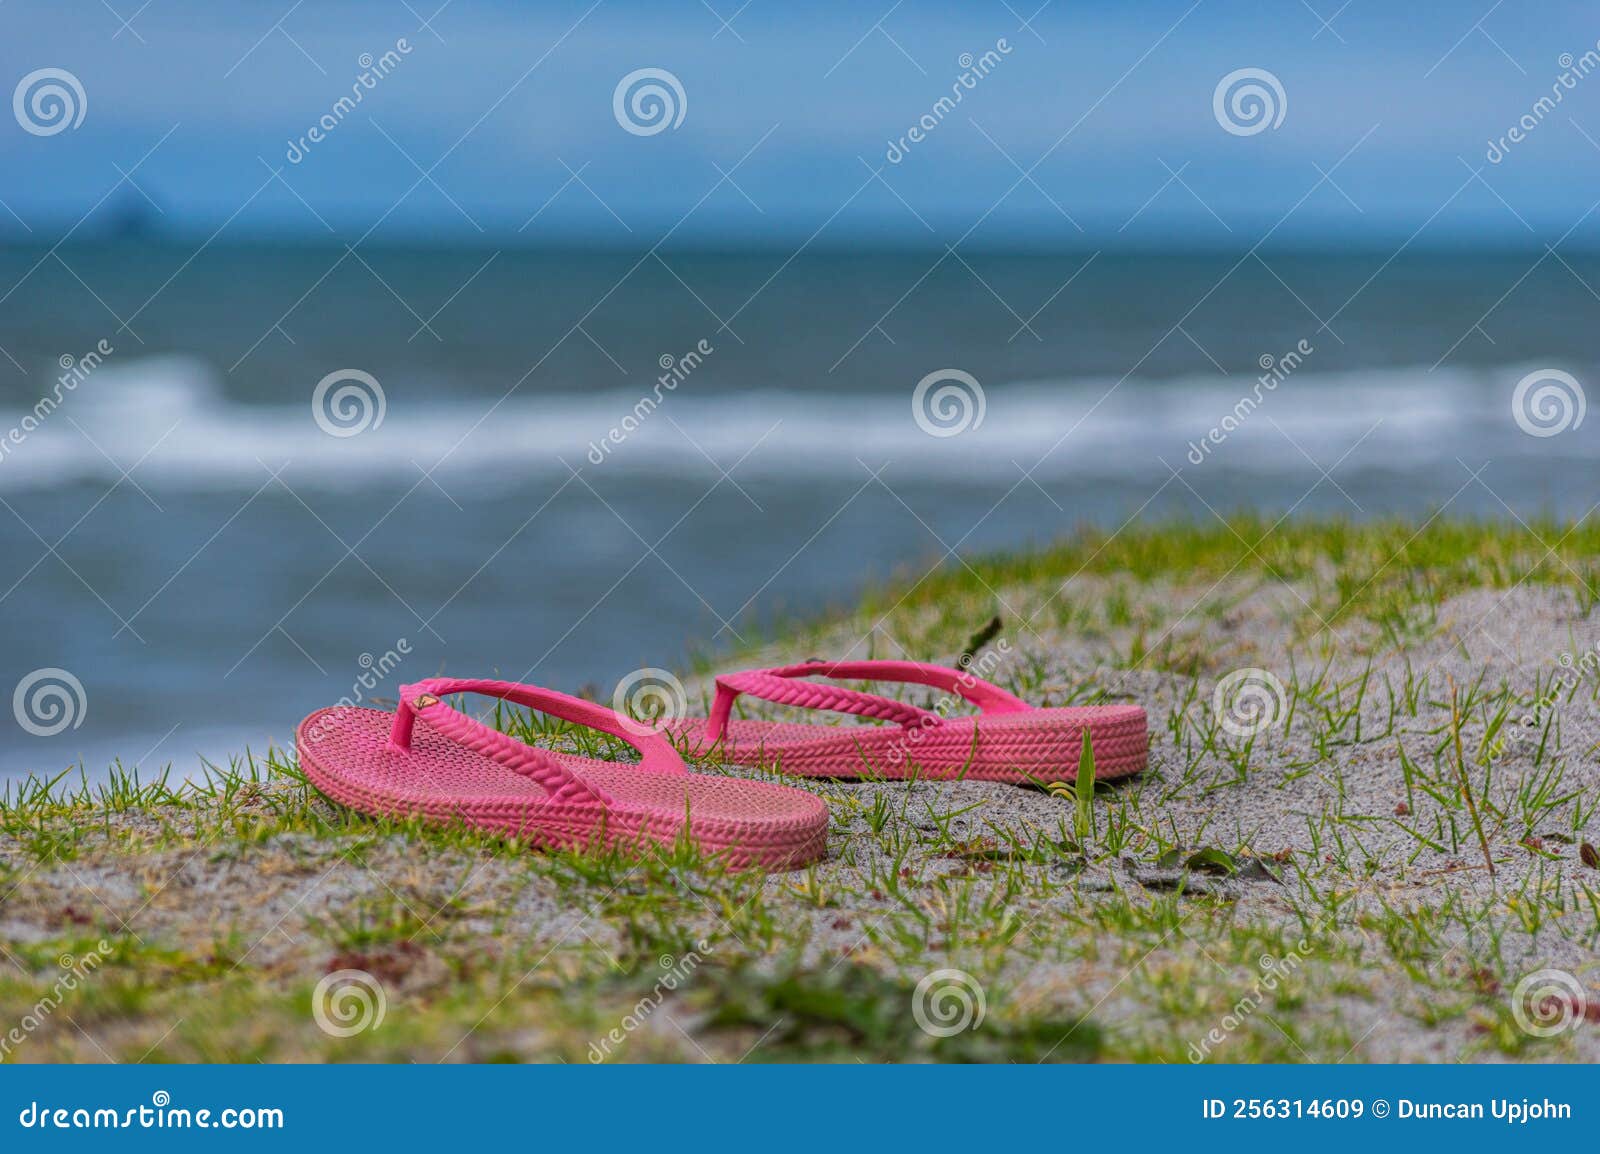 lost footwear in sanddunes at beach.